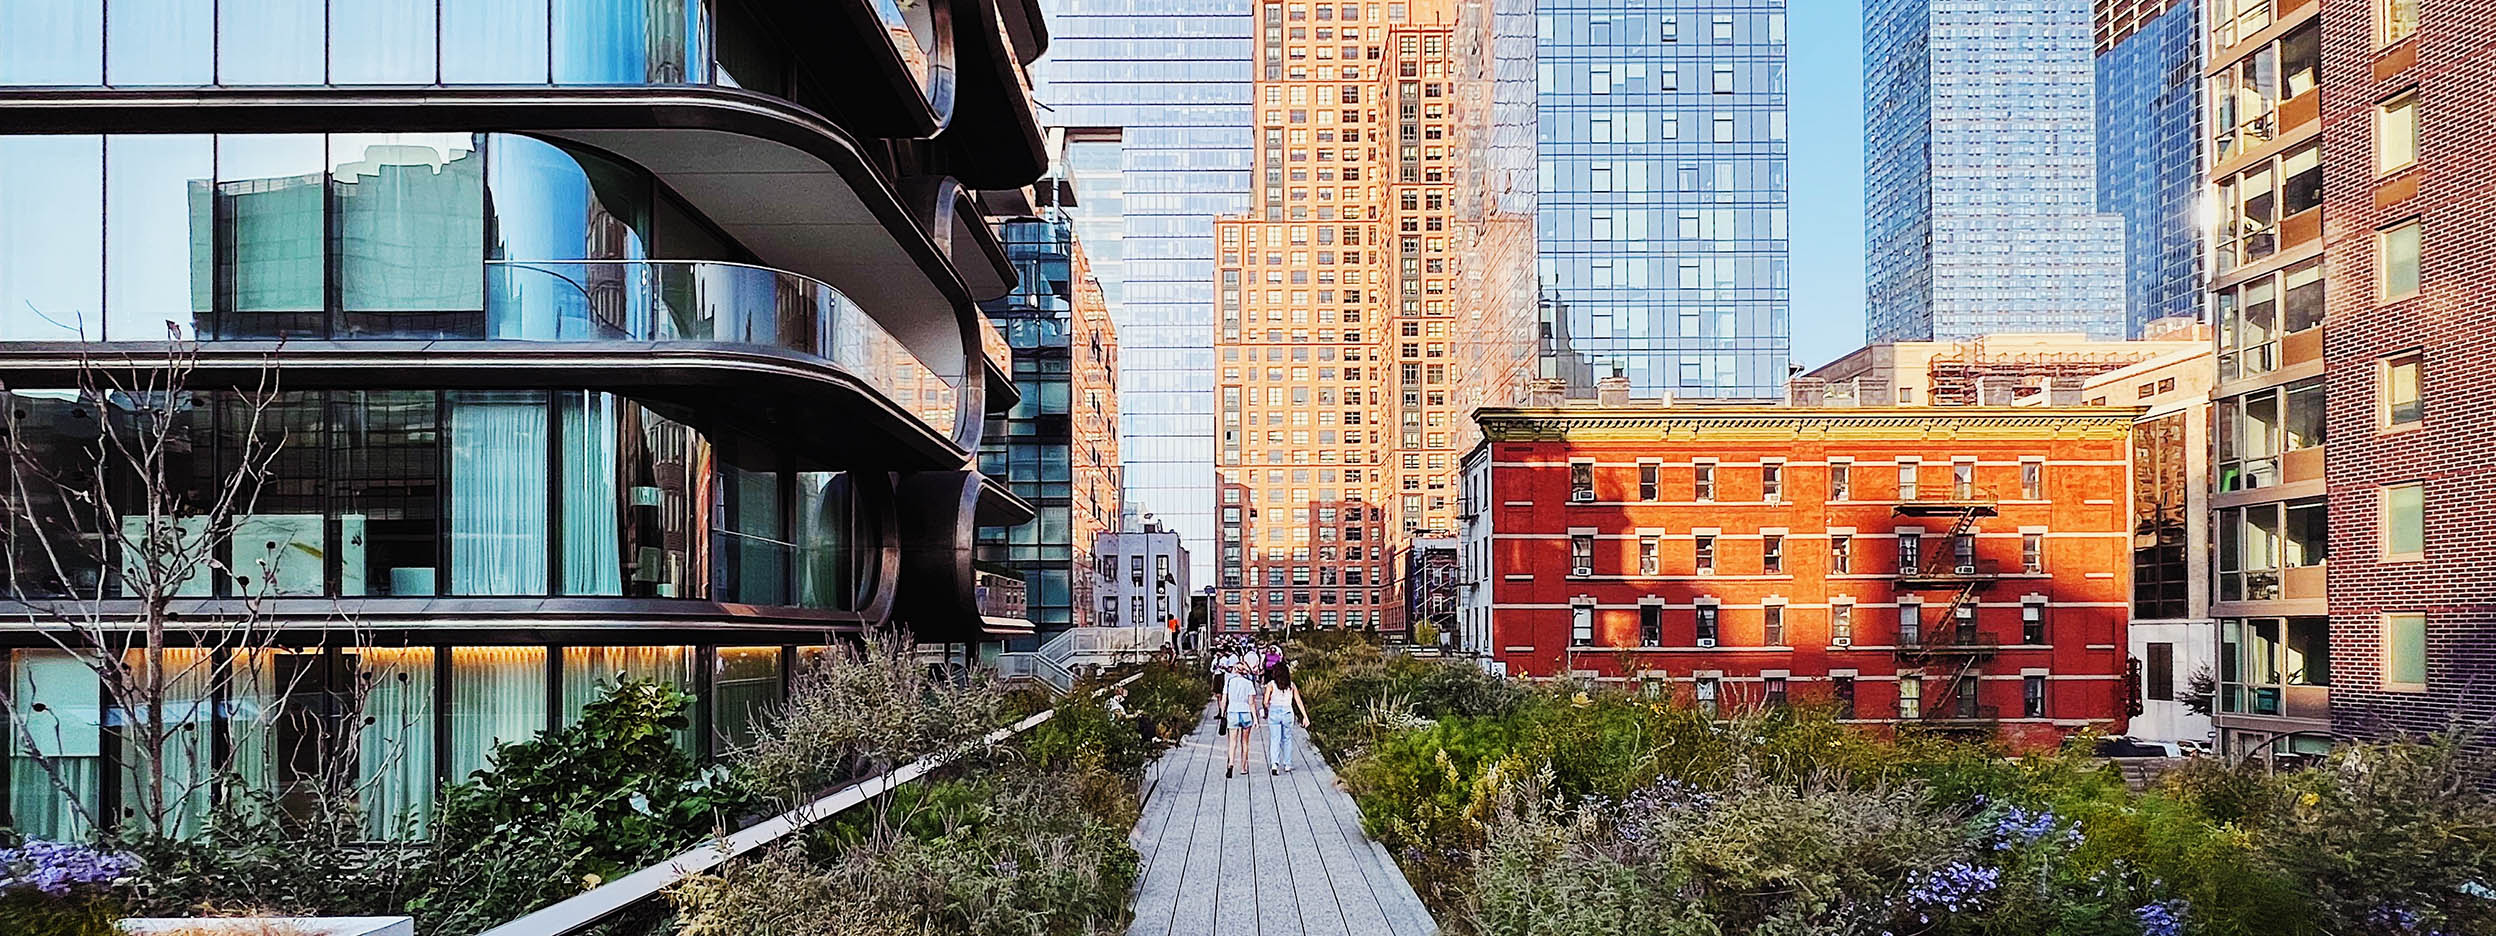 Sidewalk through a city of buildings